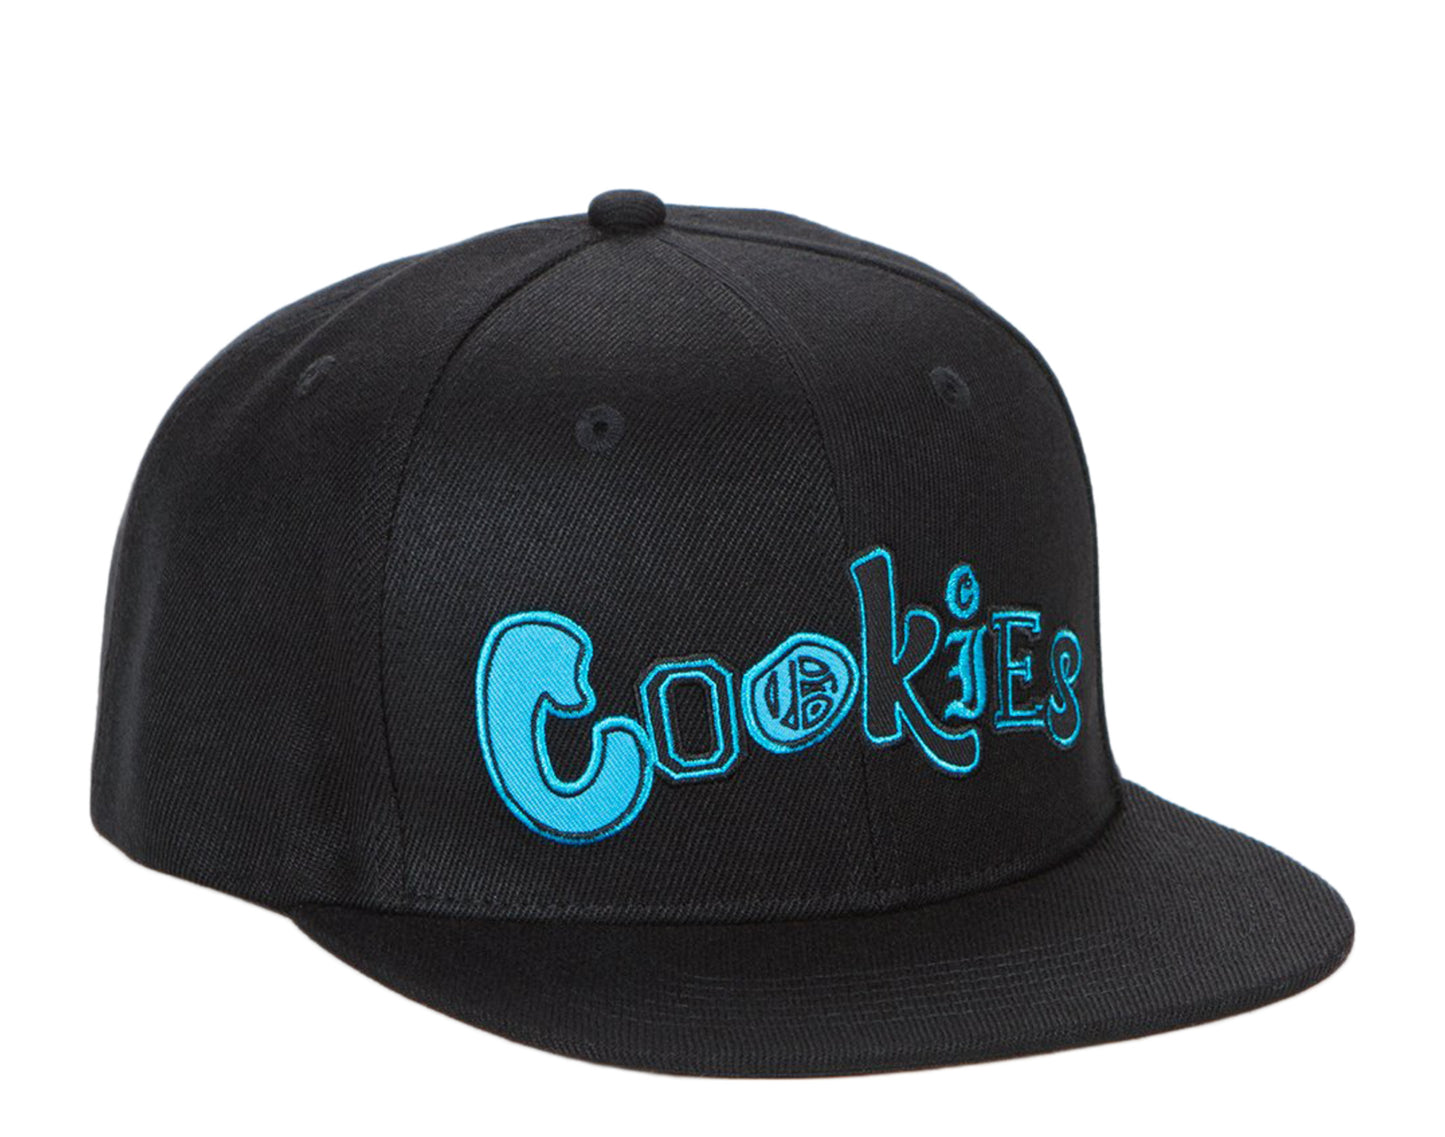 Cookies City Limits 2-Tone Twill Snapback Black/Blue Hat 1545X4117-BLK